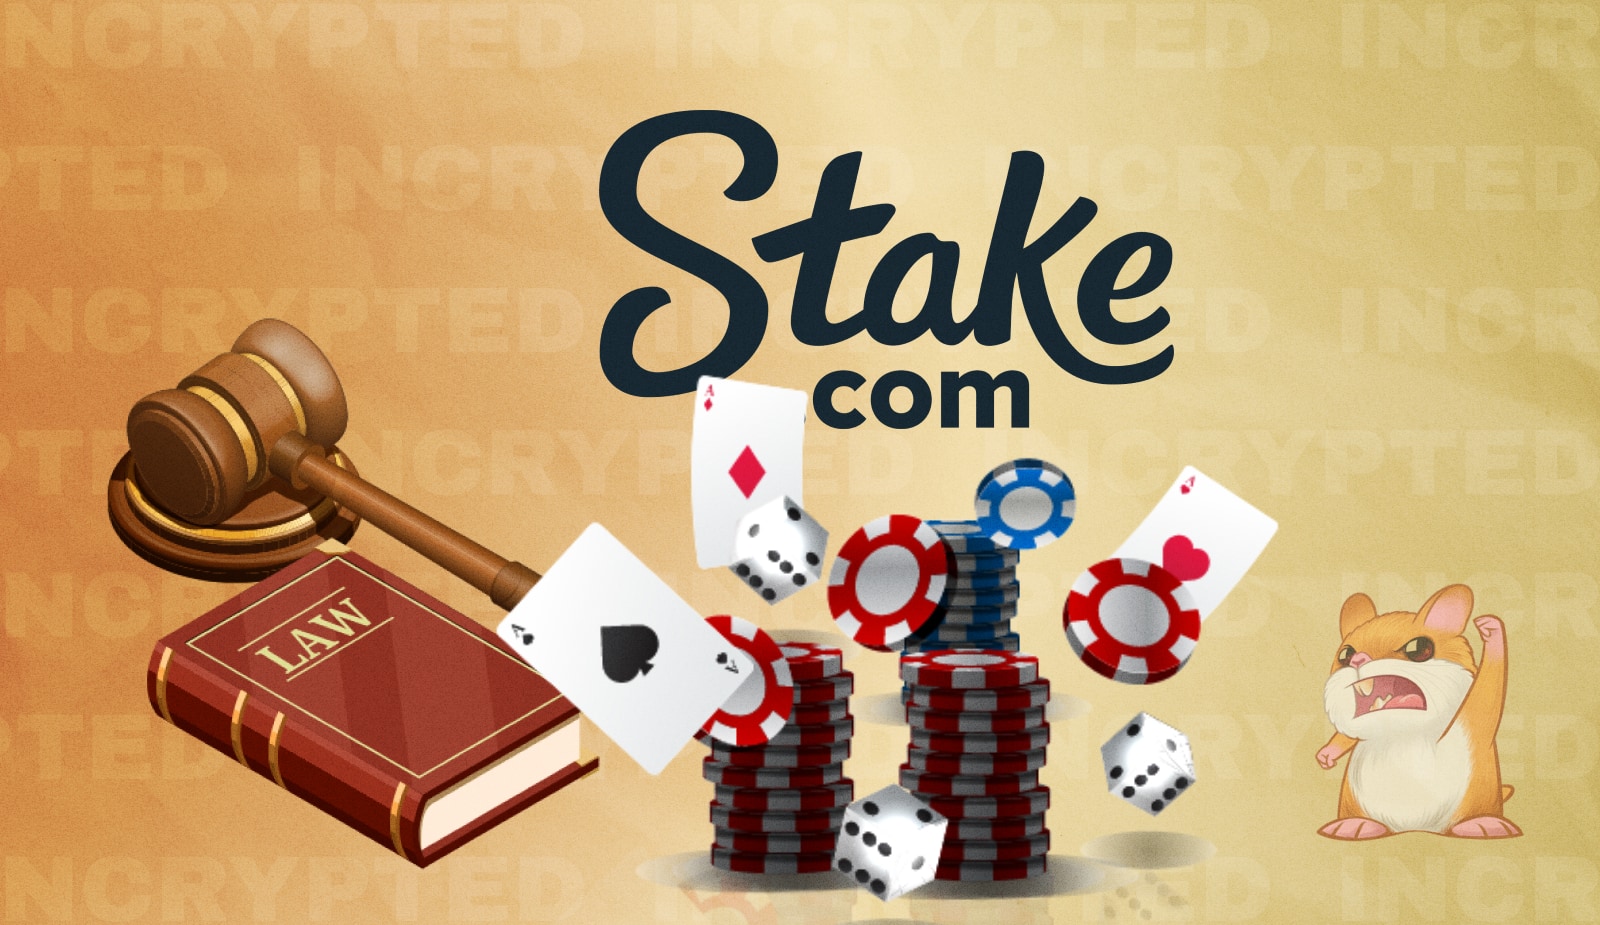 На крипто-казино Stake.com подали в суд. Бывший партнер требует от руководства $400 млн. Заглавный коллаж новости.